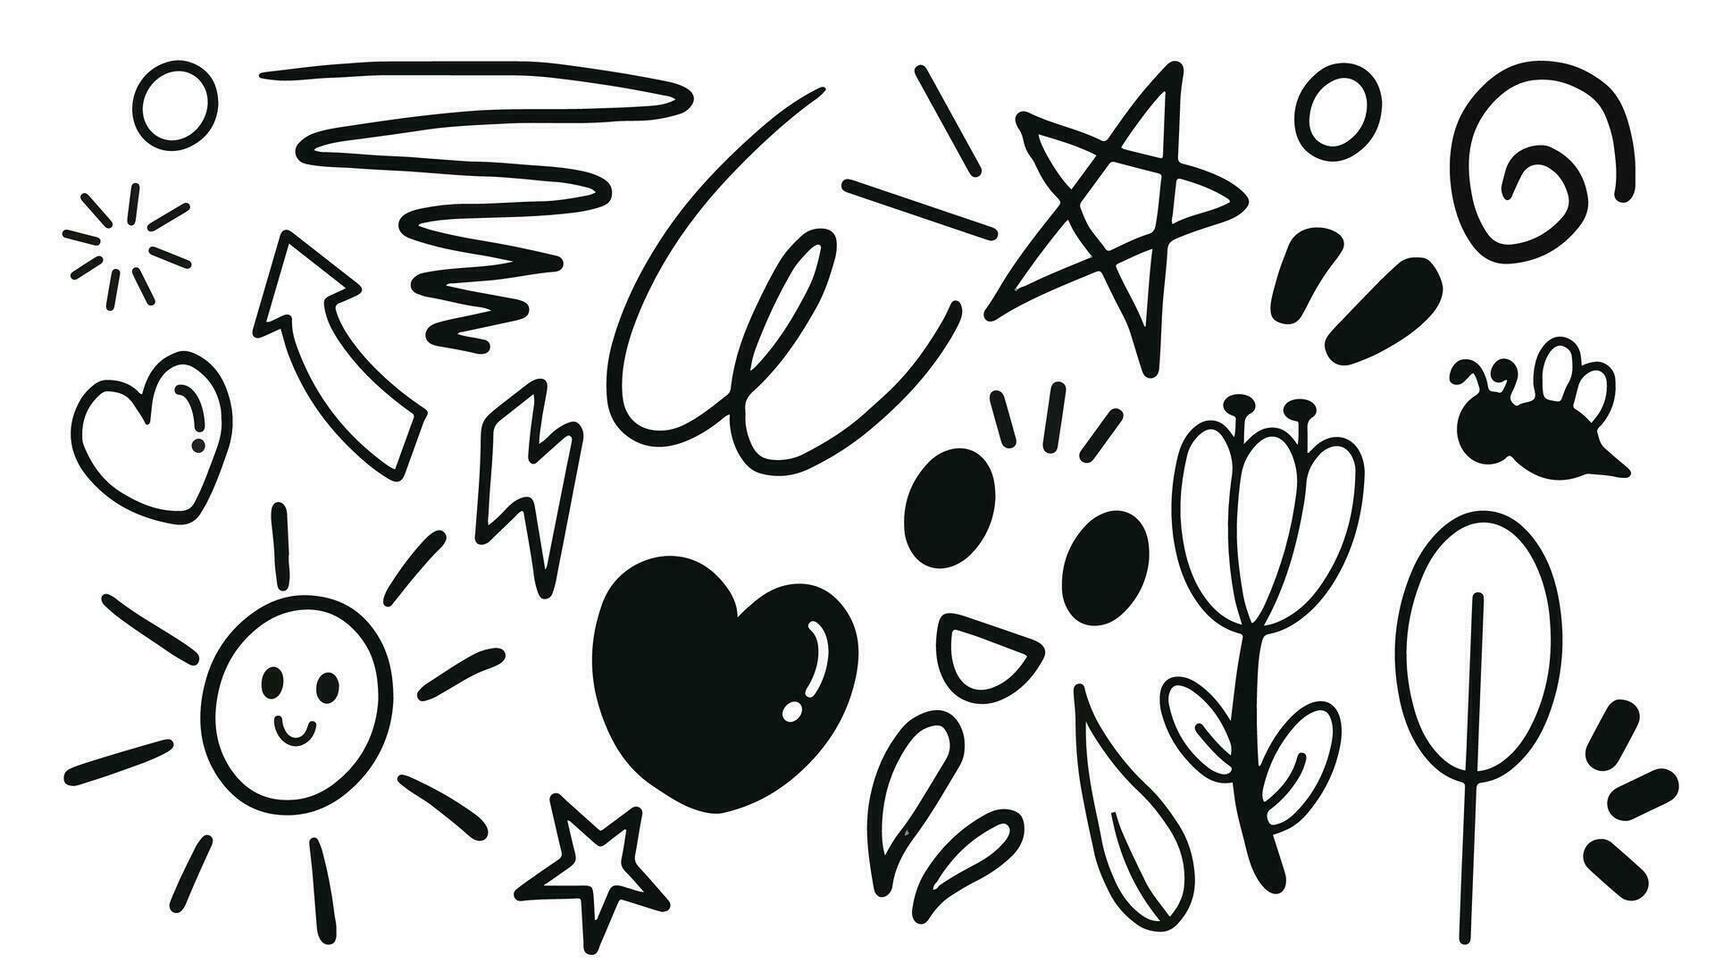 impostato di scarabocchio mano disegnato. elementi di stella, ape, nube, sole, occhio, parola, fiore eccetera. vettore illustrazione isolato su bianca sfondo